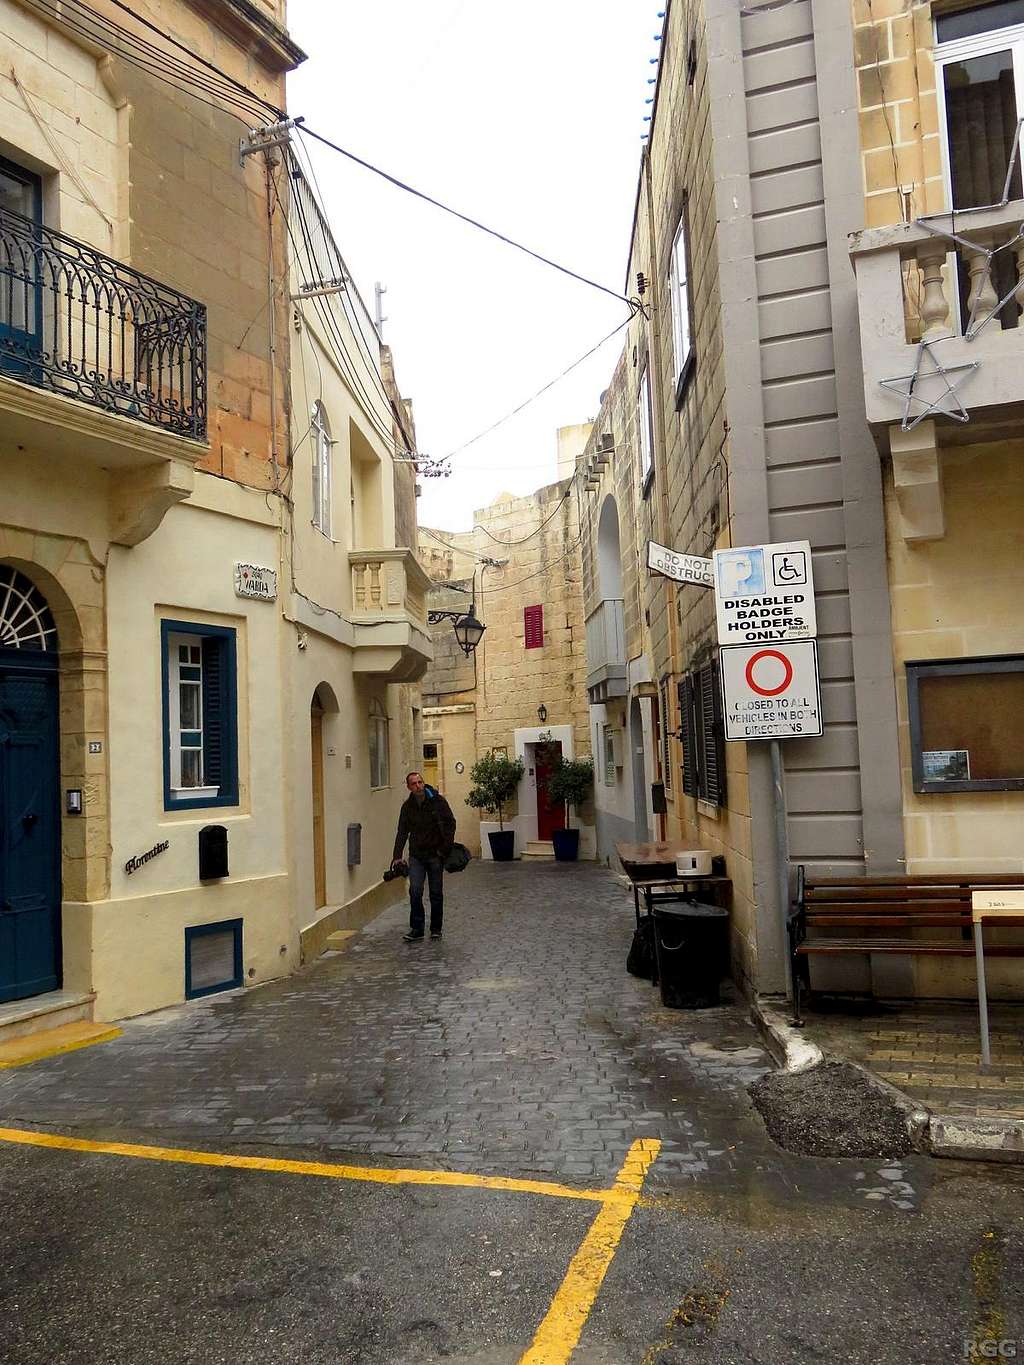 Cobblestone streets in the old town of Għargħur